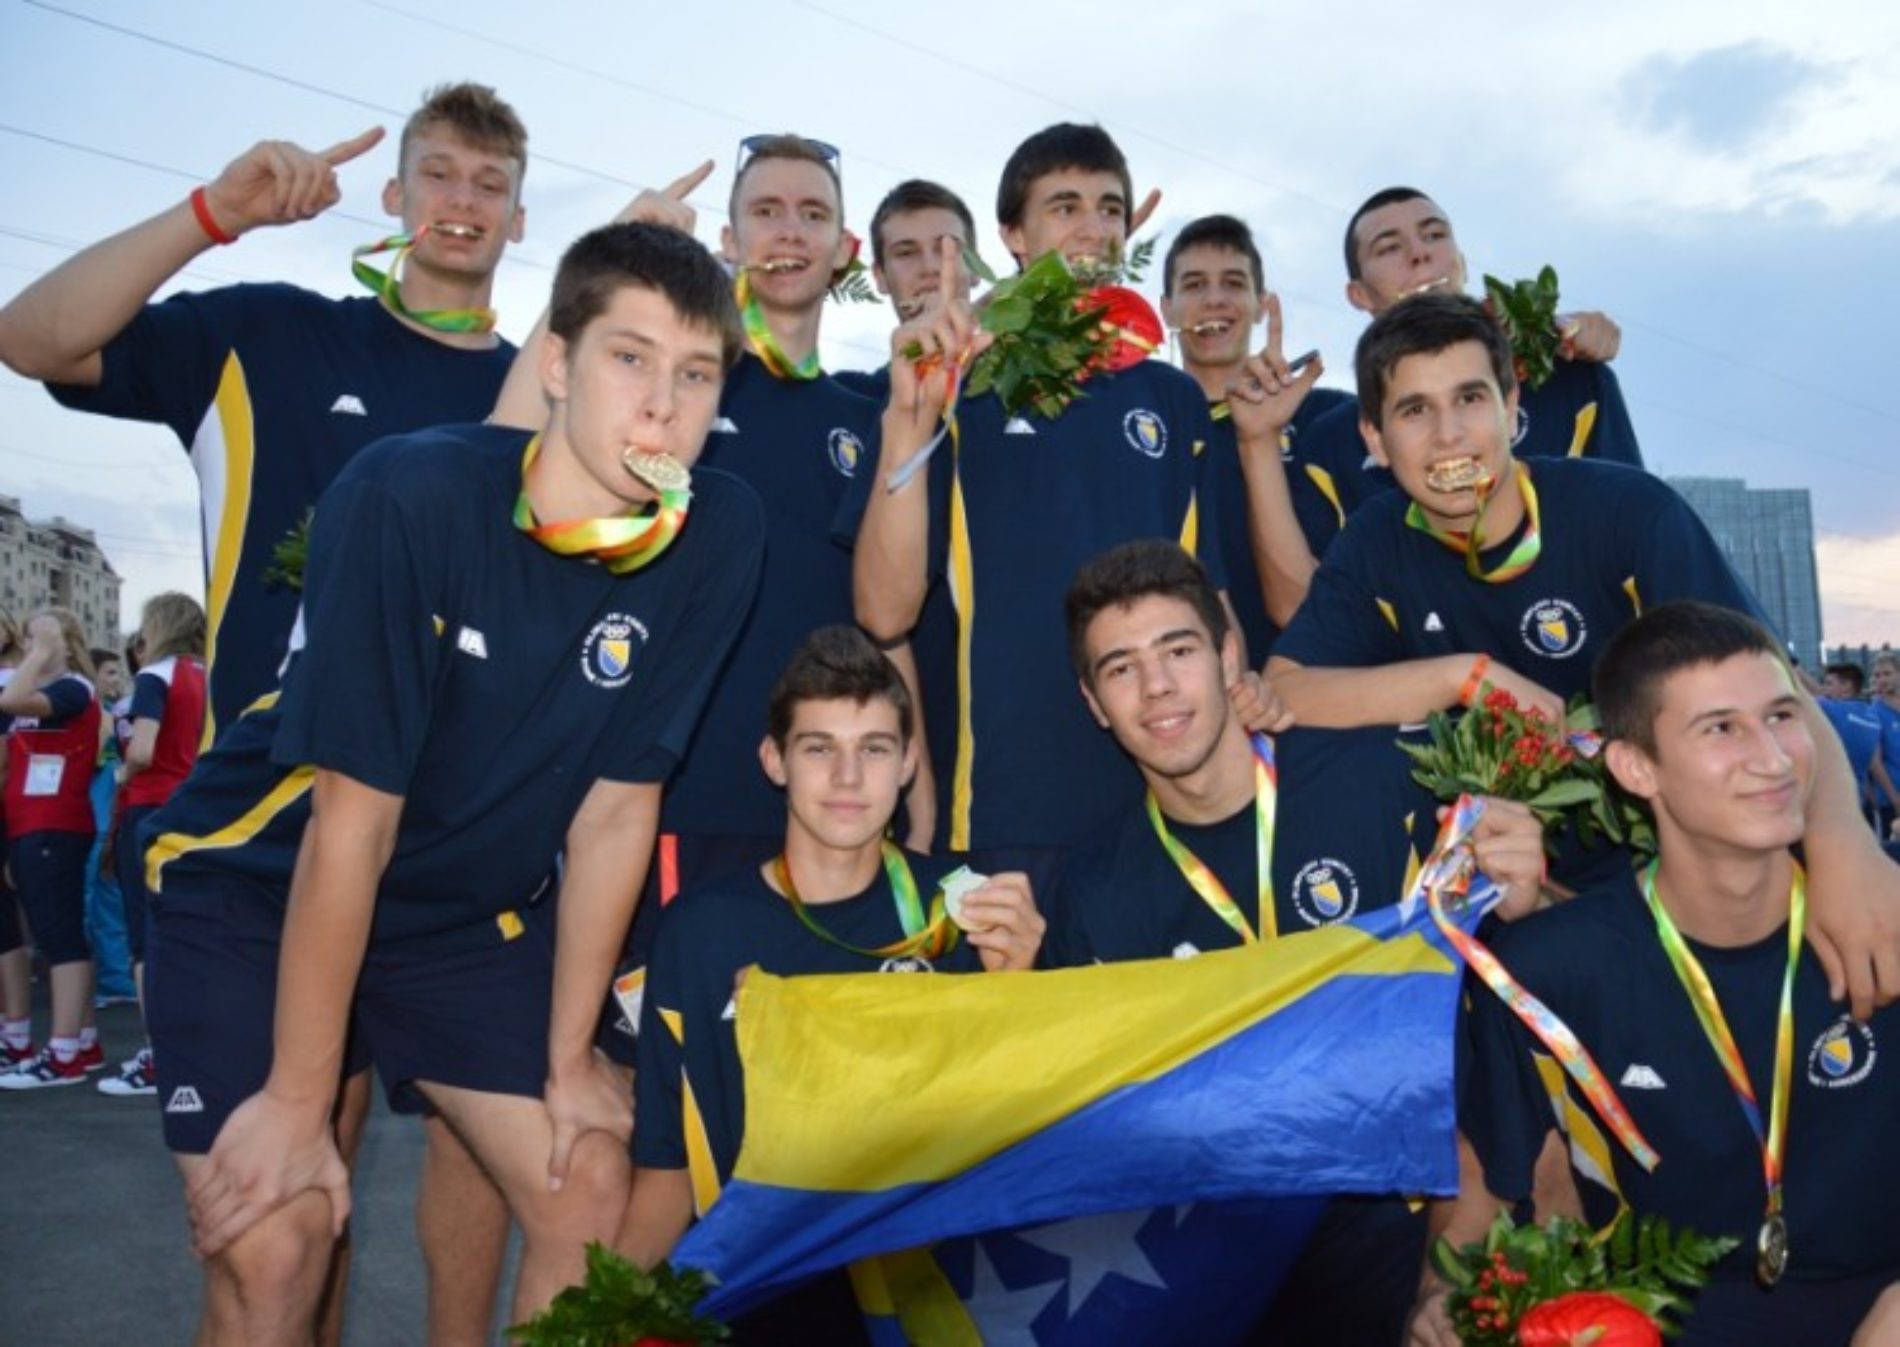 Kadetska košarkaška reprezentacija  Bosne i Hercegovine osvojila zlato na  EYOF-u